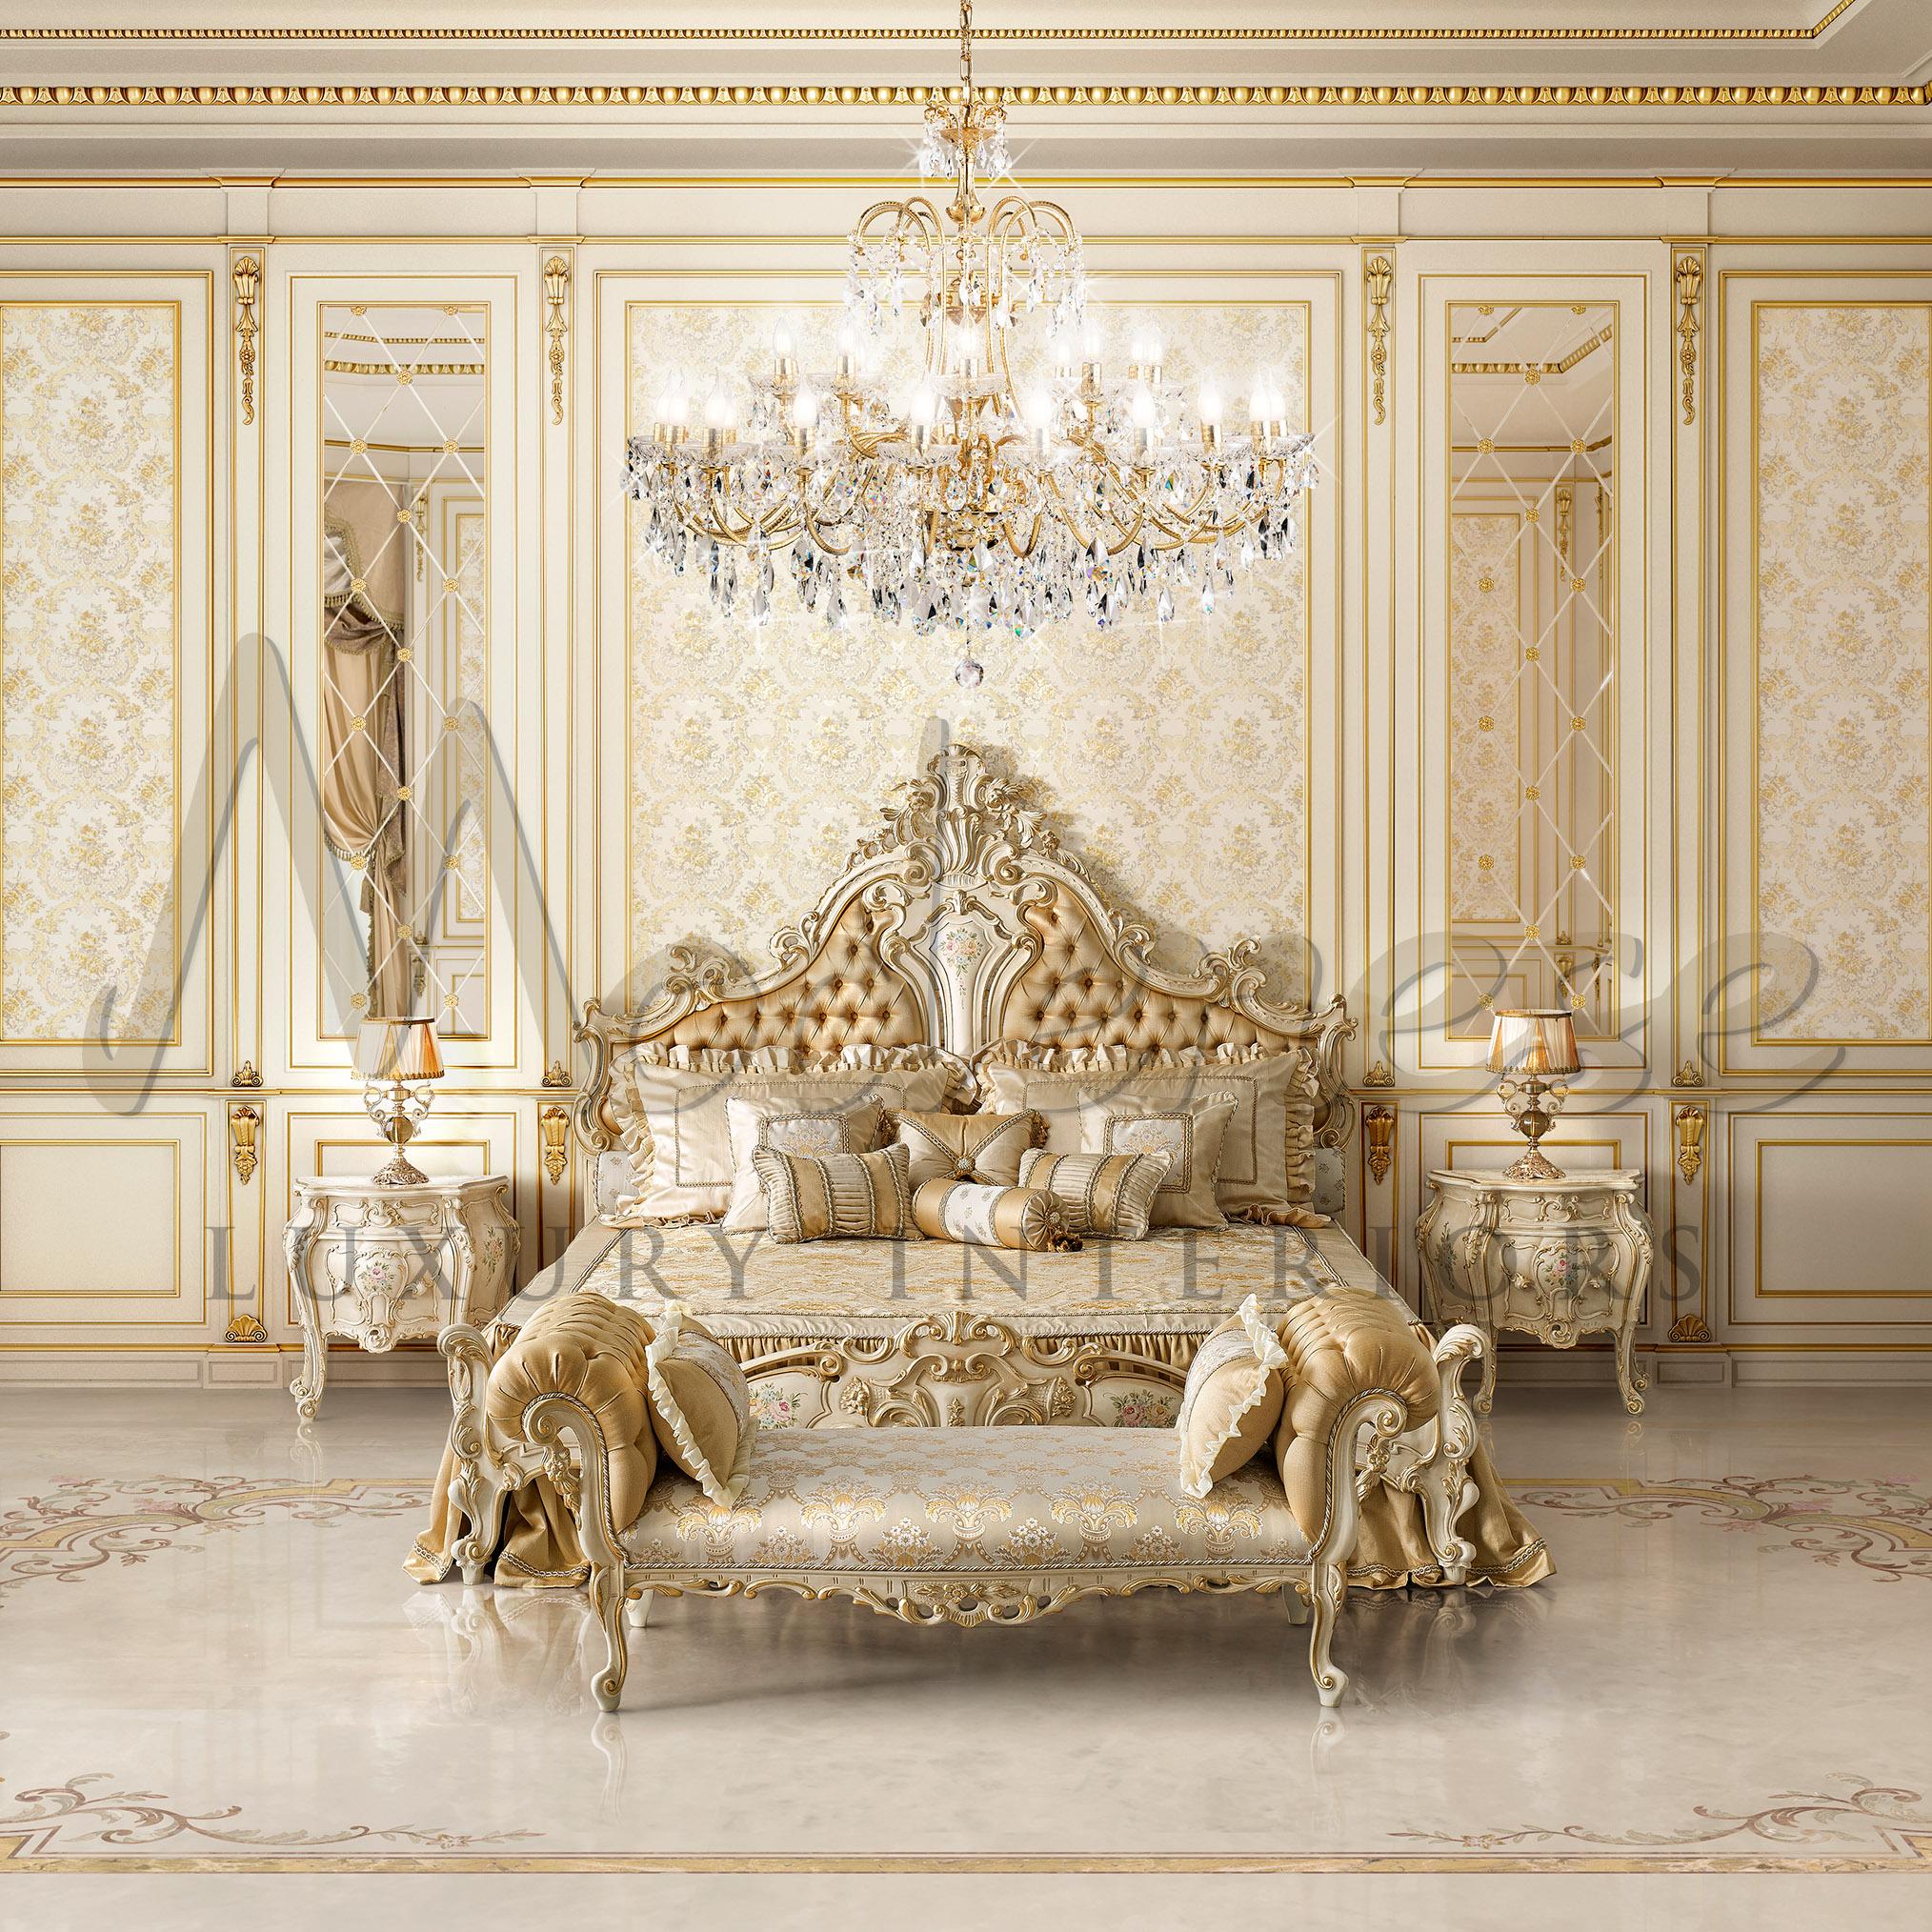 Monumentaler Barock-Kronleuchter, speziell von Modenese Luxury Interiors für Luxuspaläste und Privatvillen entworfen. Die mit 24-karätigem Blattgold veredelte Struktur beherbergt 30 Glühbirnen und jede Menge Scholler-Kristallanhänger, die Ihren Raum